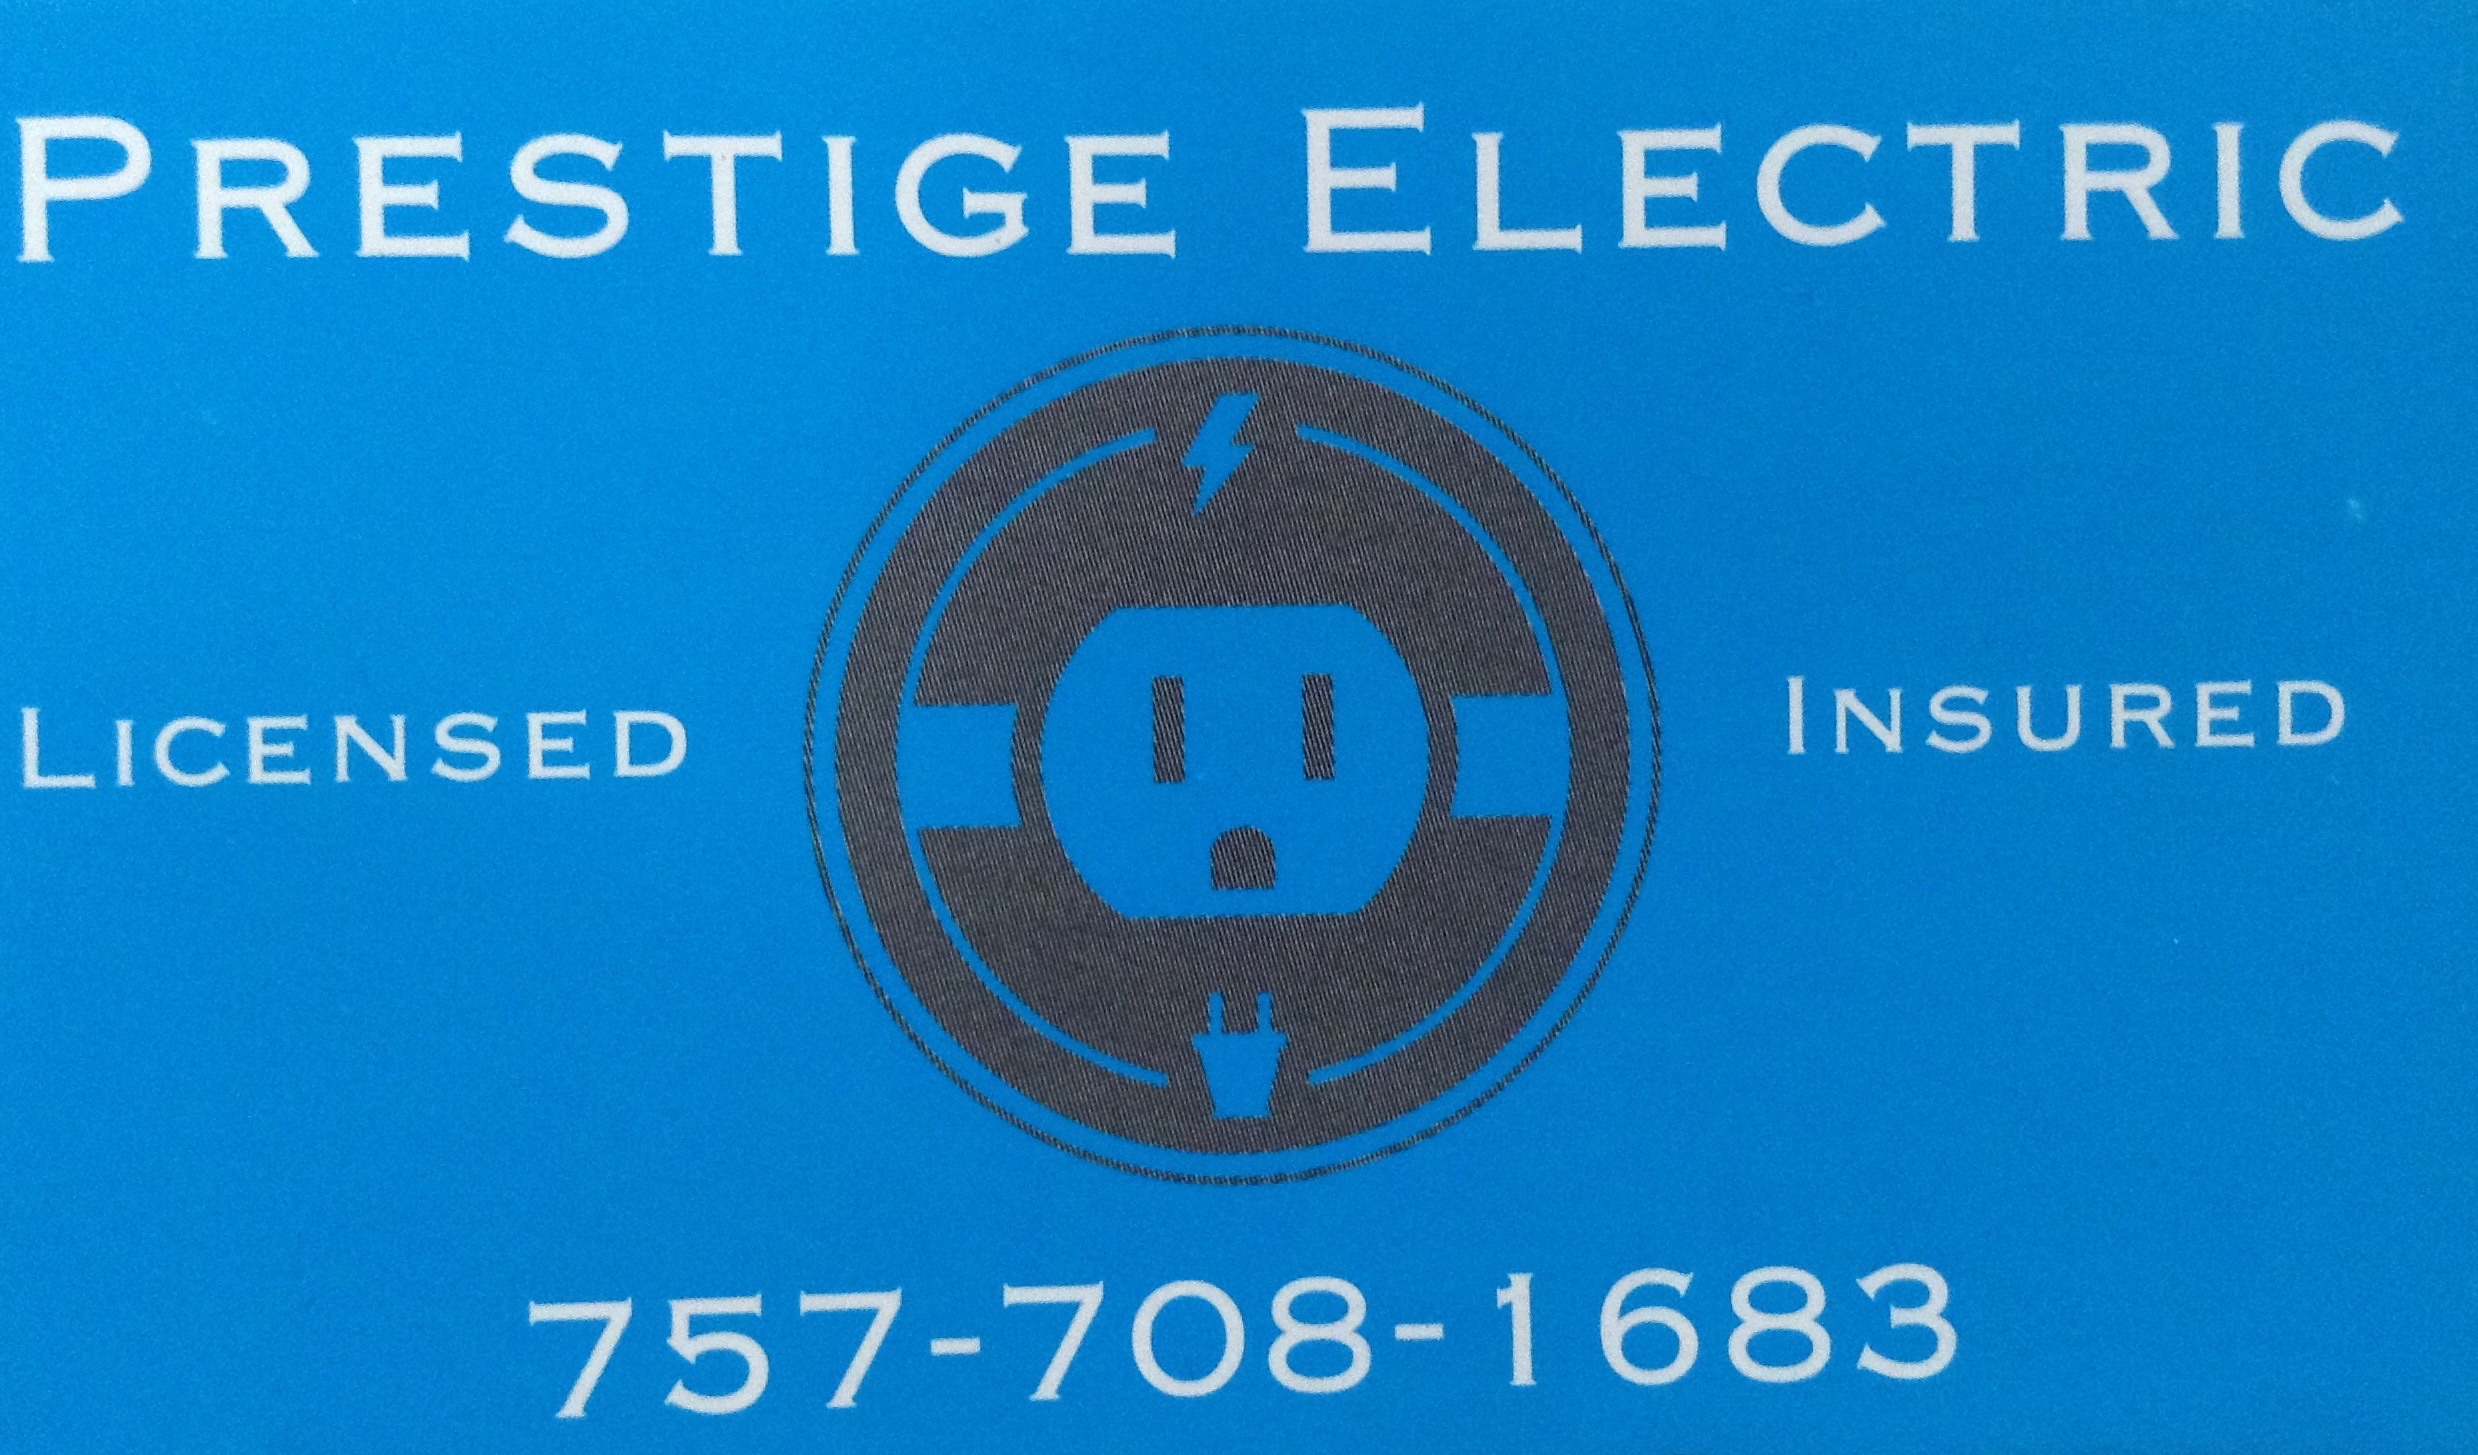 Prestige Electric Logo